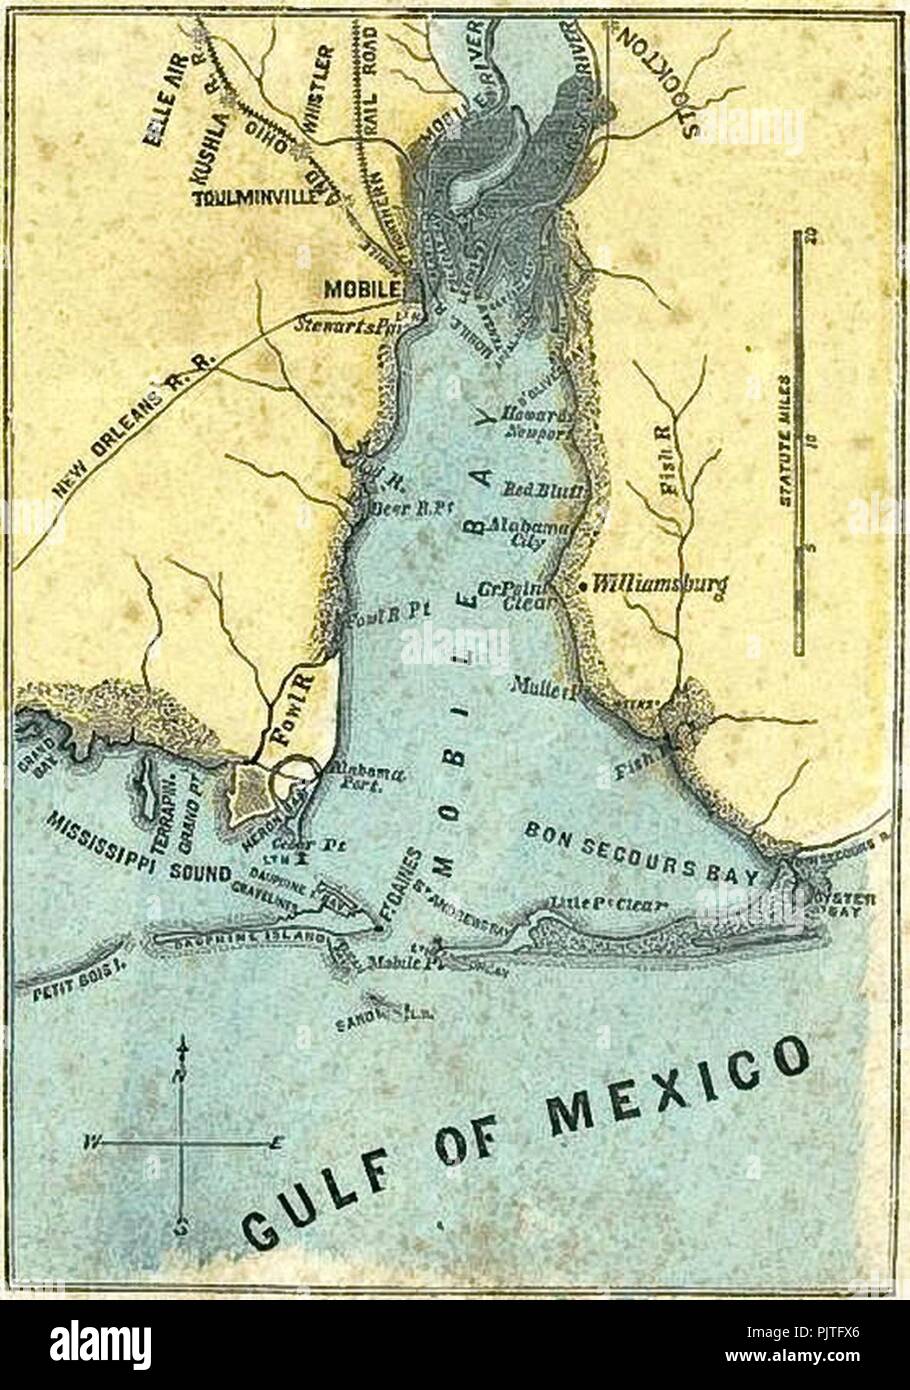 La batalla de Mobile Bay mapa. Foto de stock